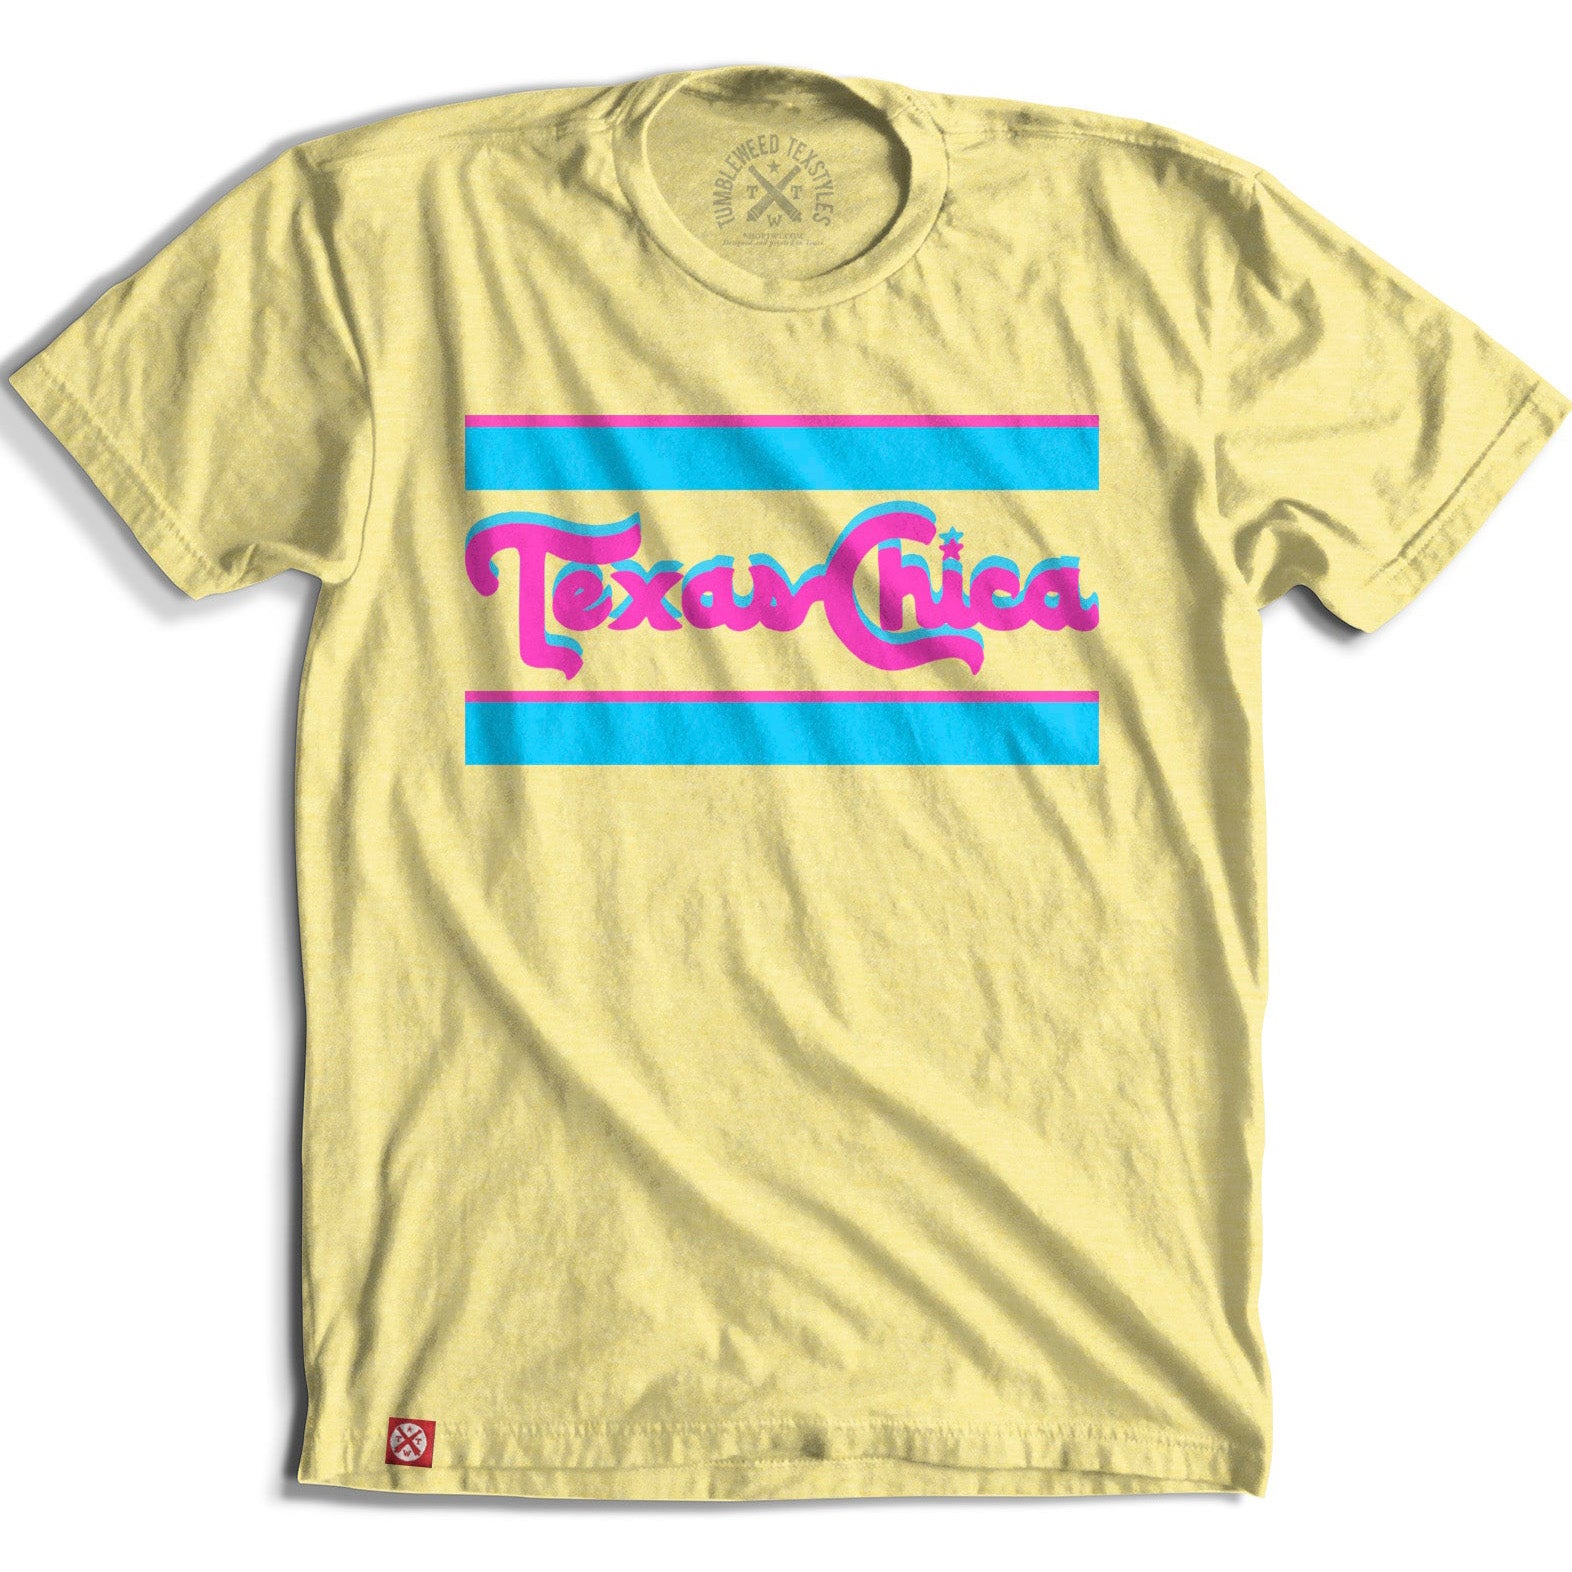 Retro Chica T-Shirt